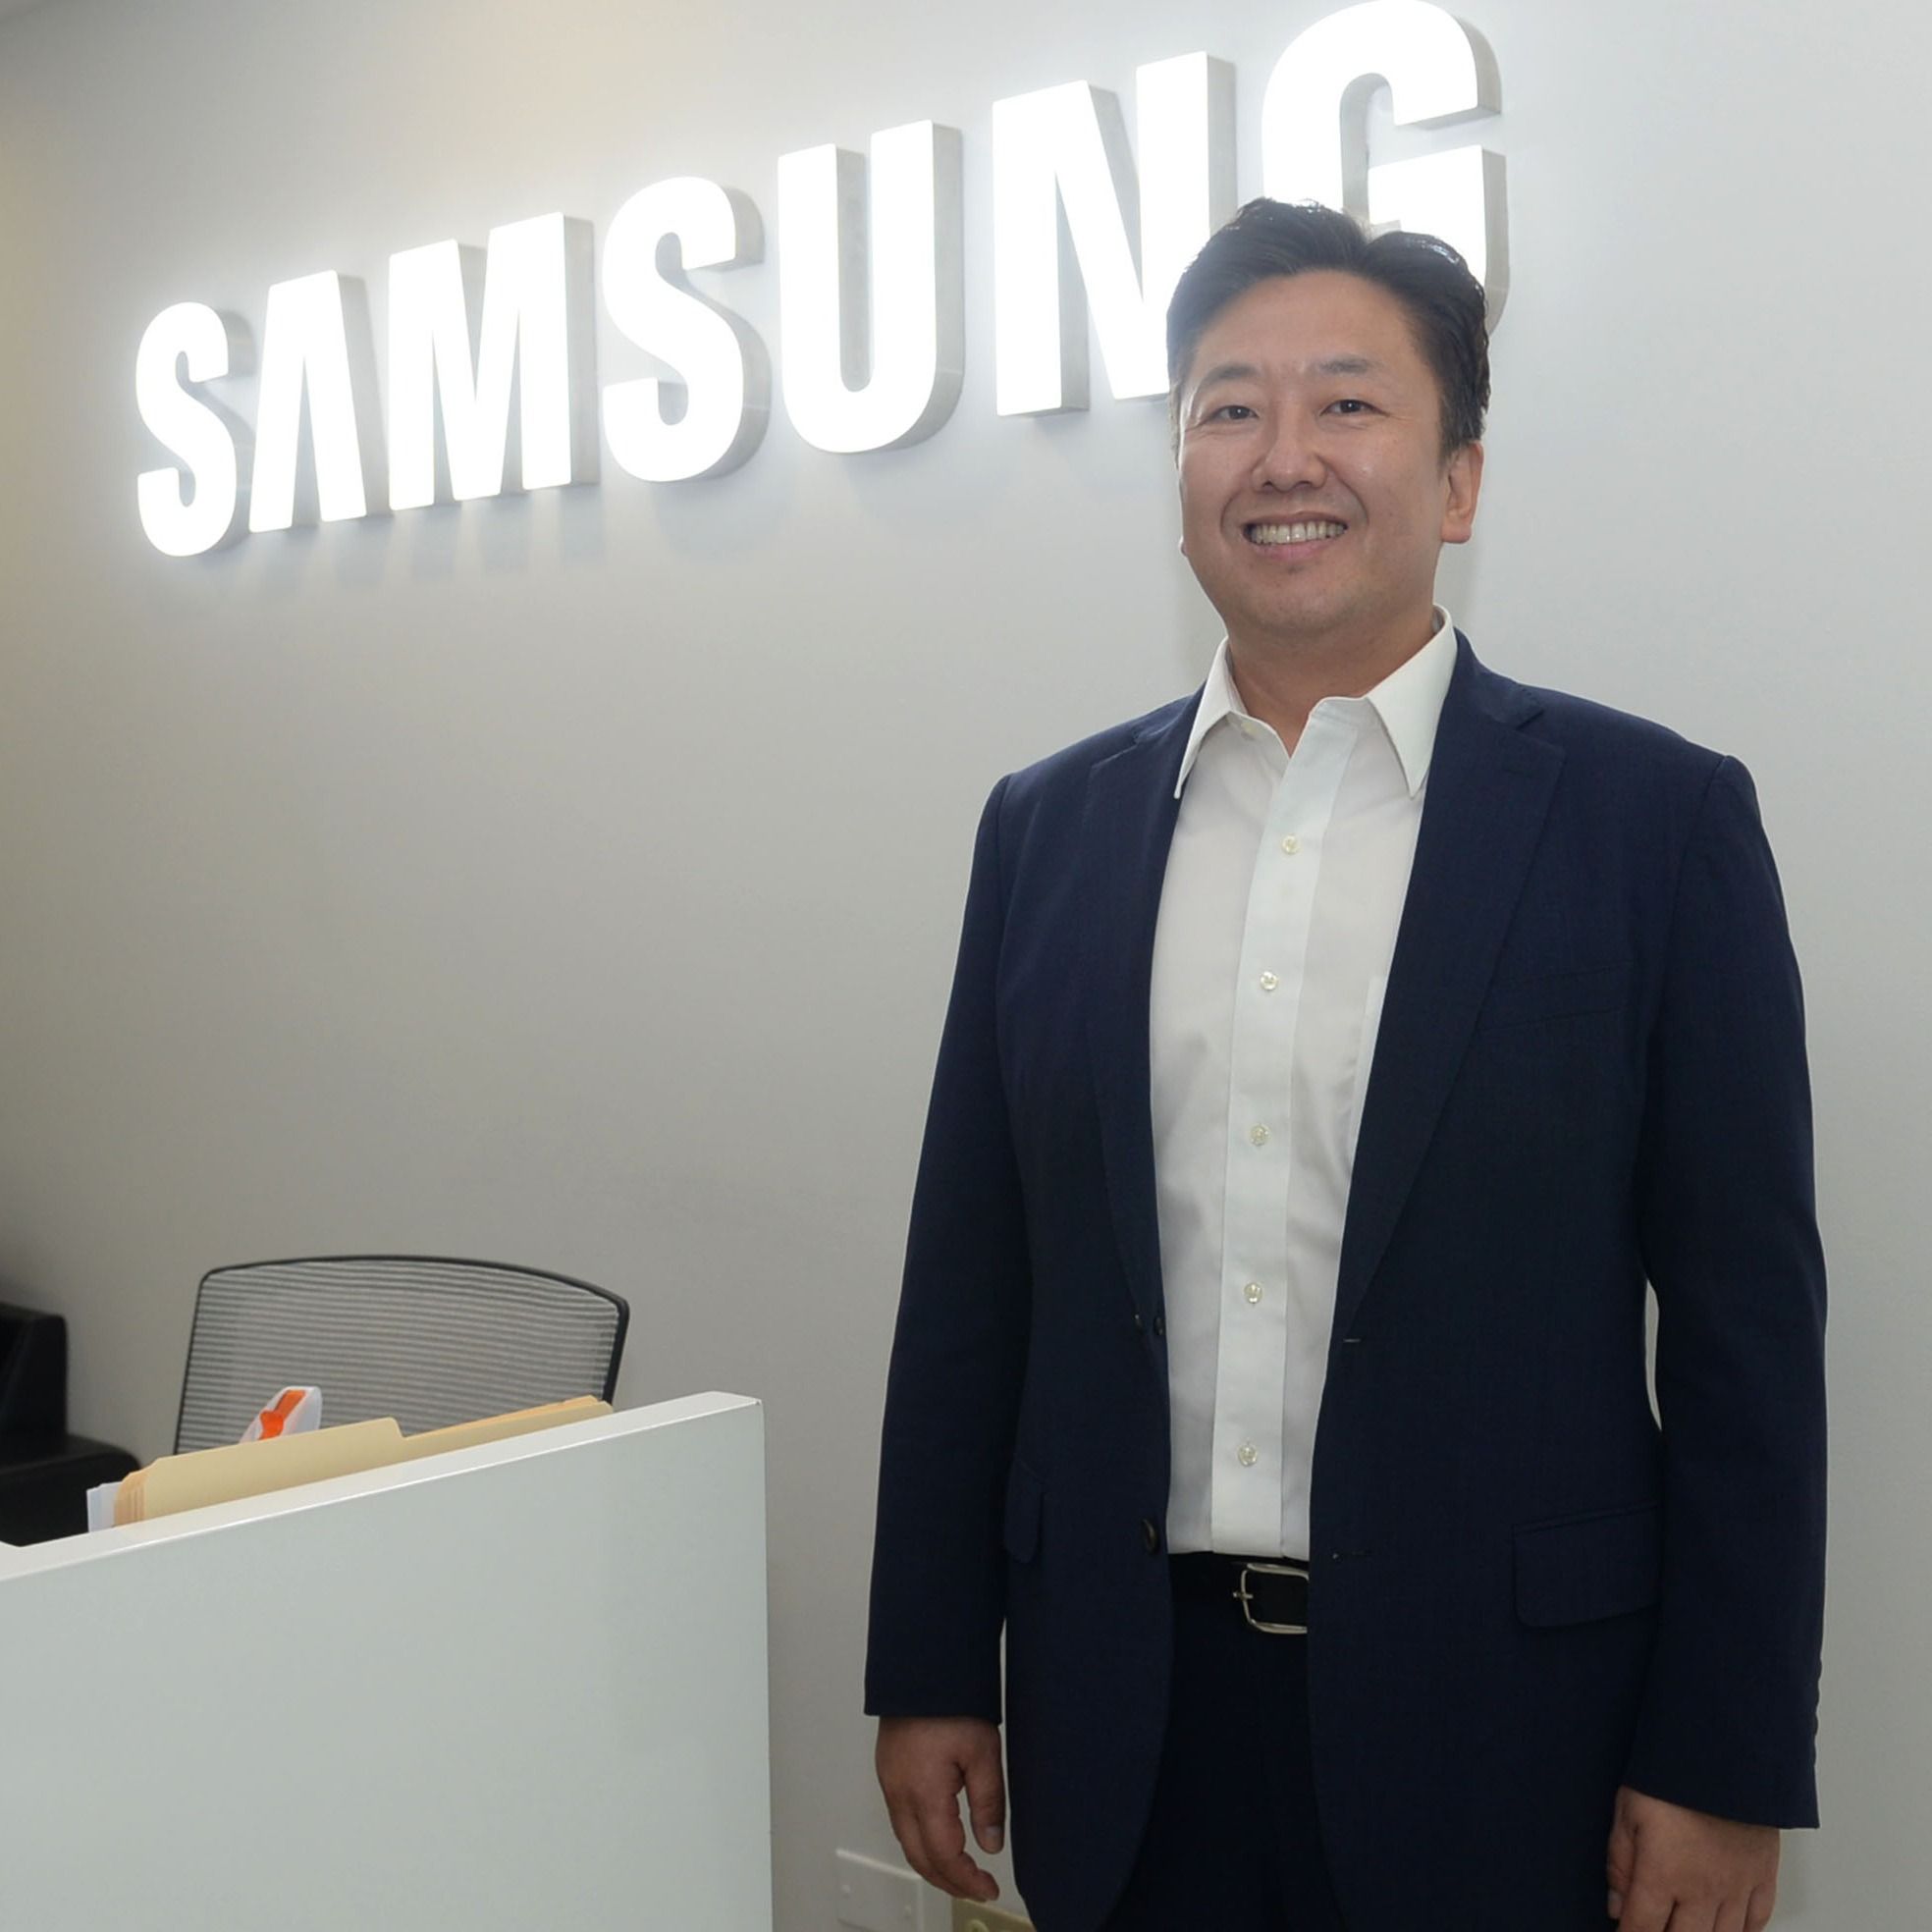 En Samsung Electronics tenemos una apuesta sólida y decidida en términos de desarrollo sostenible